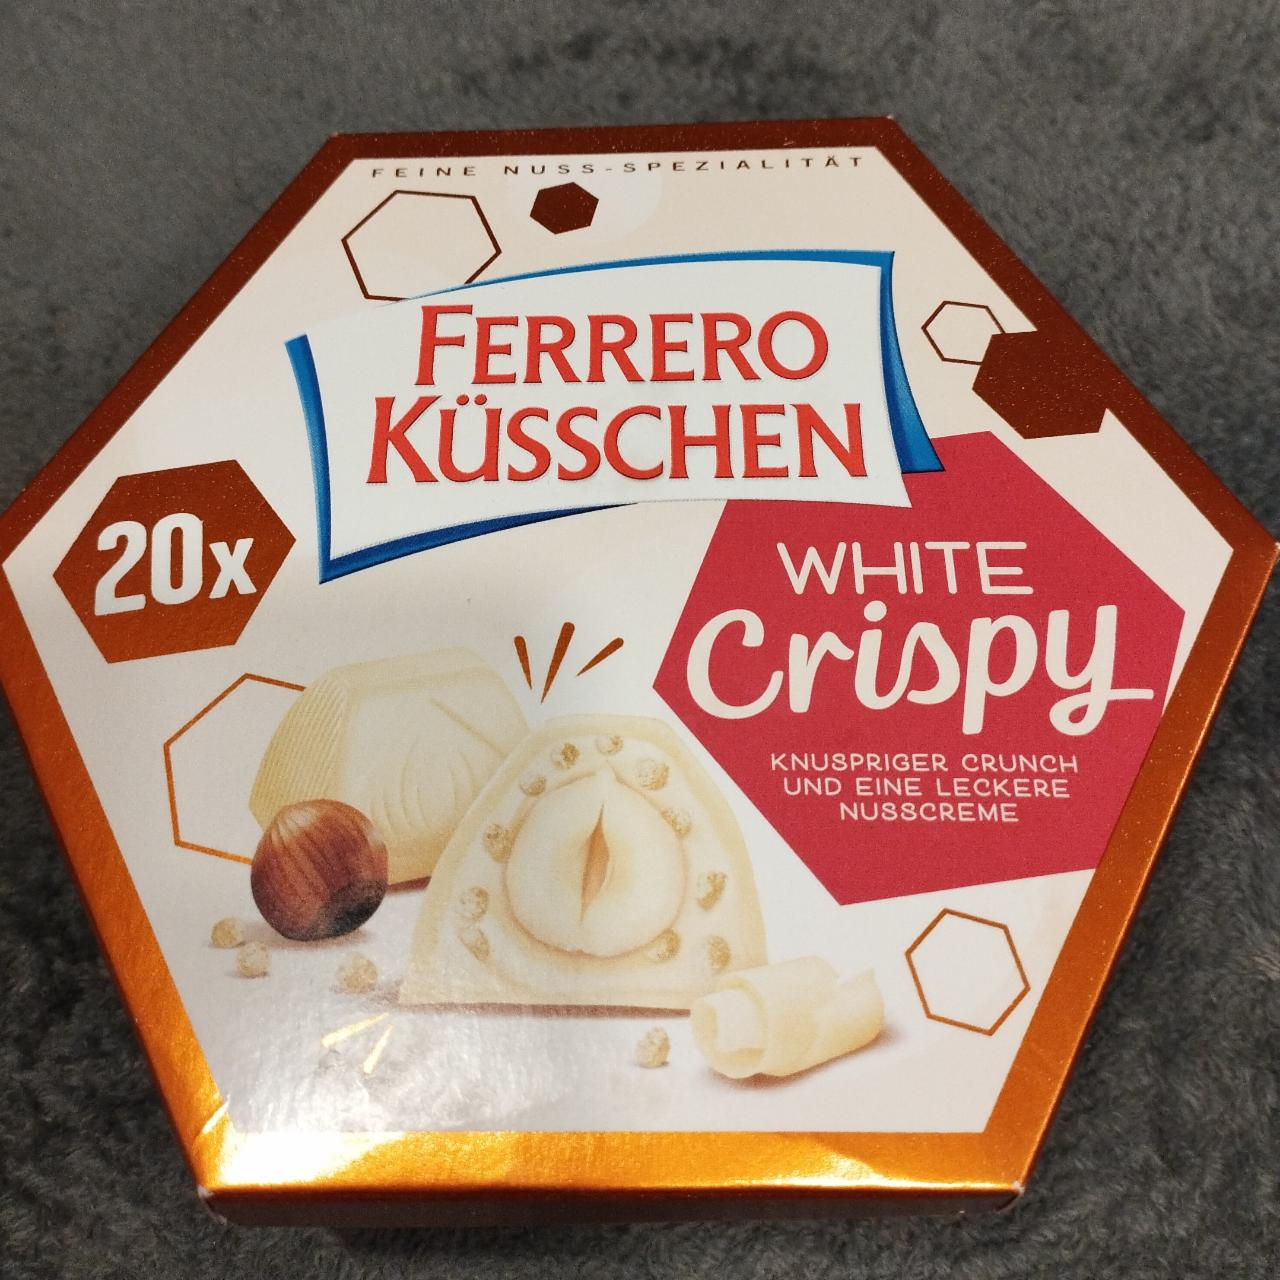 Fotografie - Küsschen White Crispy Ferrero